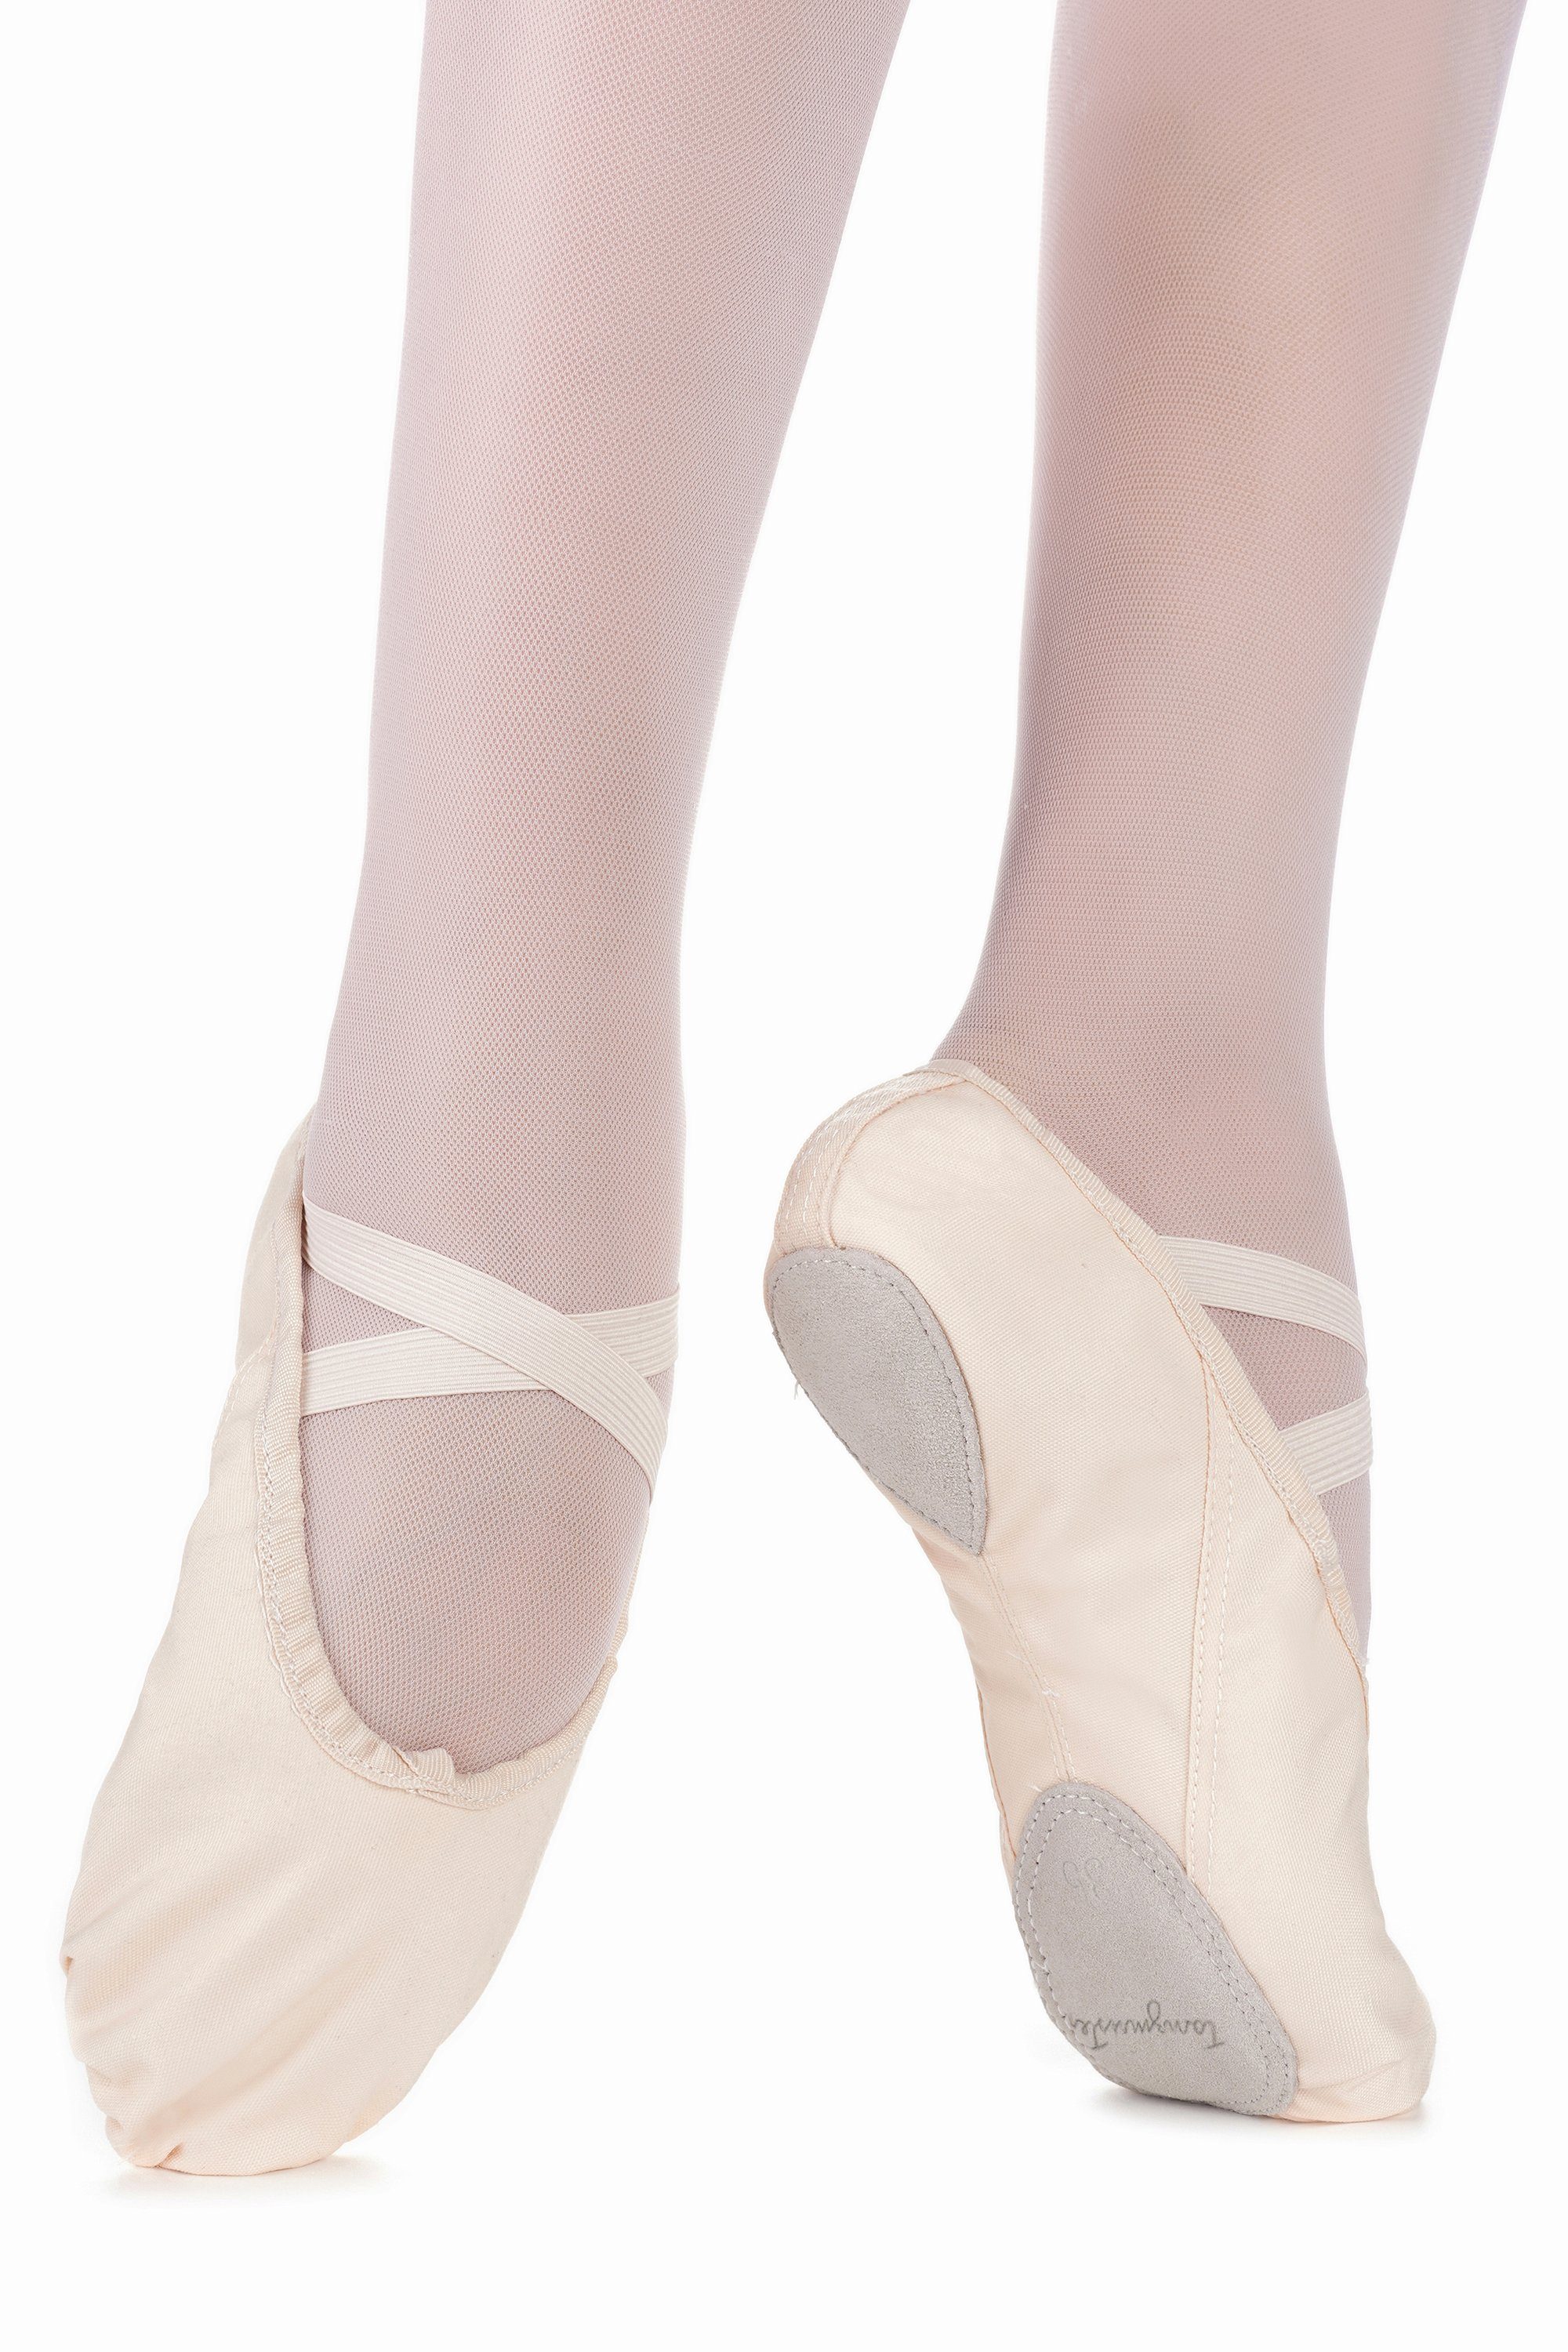 mit Ledersohle sandfarben Charlie Tanzschuh für tanzmuster Ballettschuhe Mädchen geteilter Ballettschläppchen